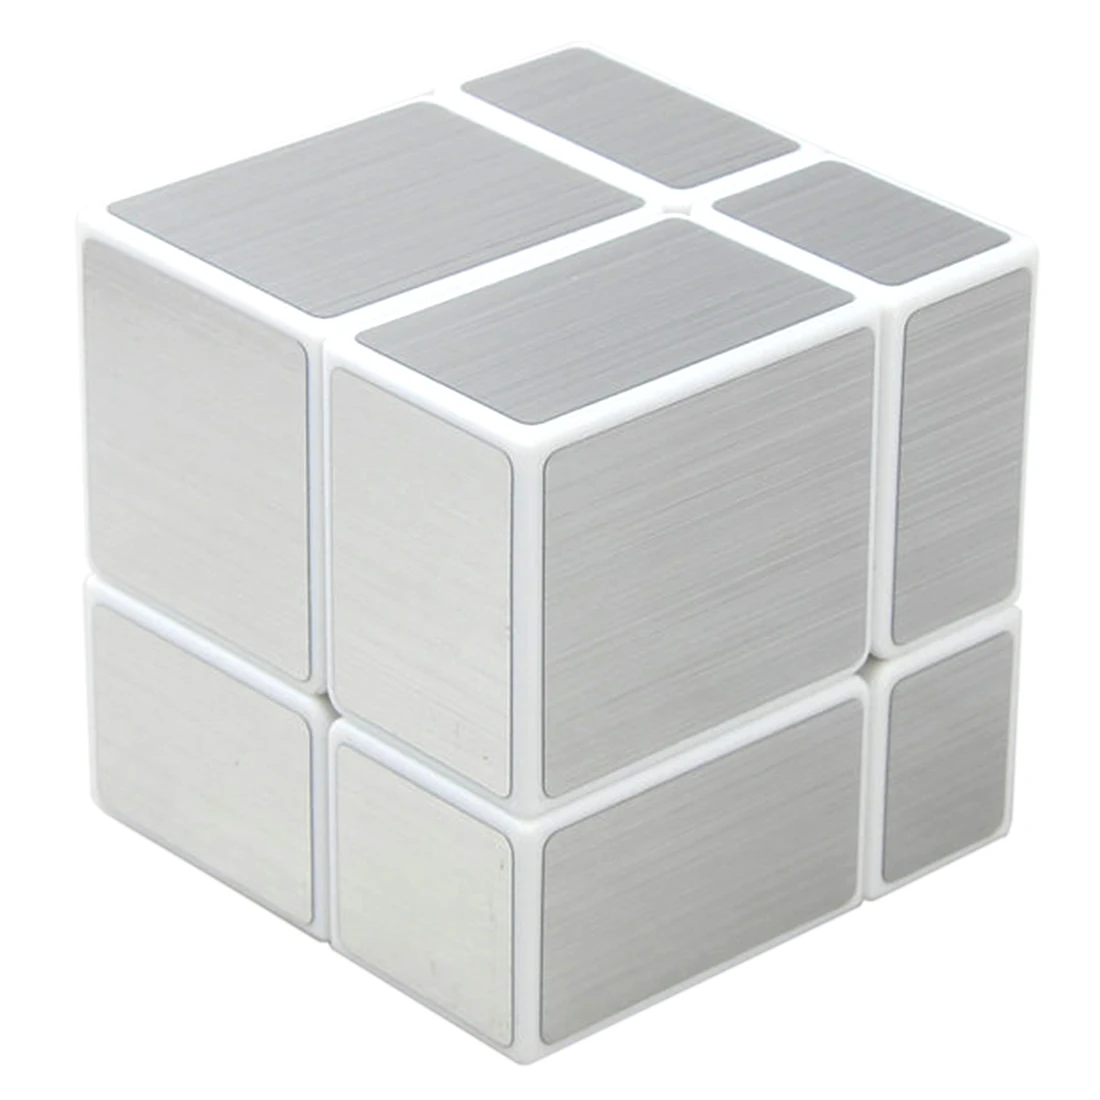 Shengshou 2X2 зеркальные Блоки Magic Cube (серебристый Wiredrawing) обучающая Подарочная игрушка для детей-белая основа